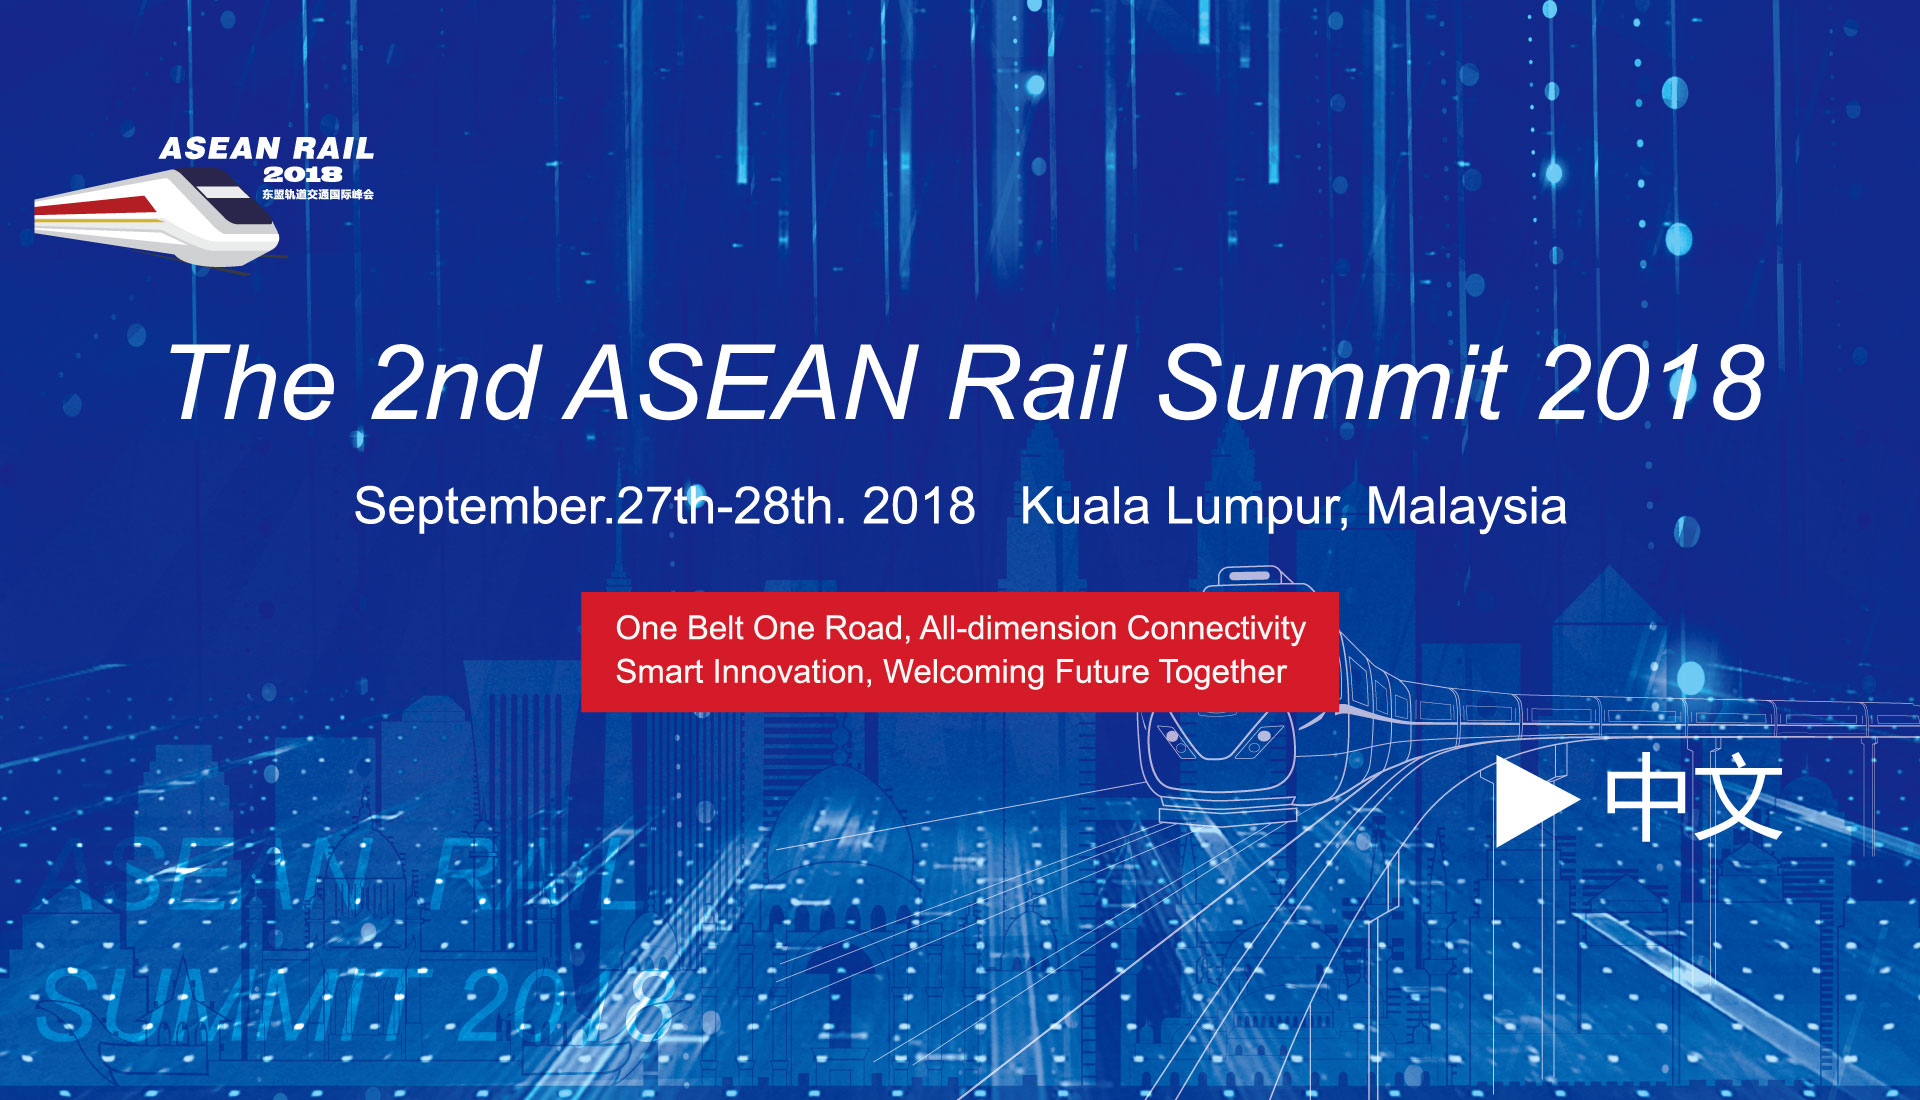 The 2nd ASEAN Rail Summit 2018